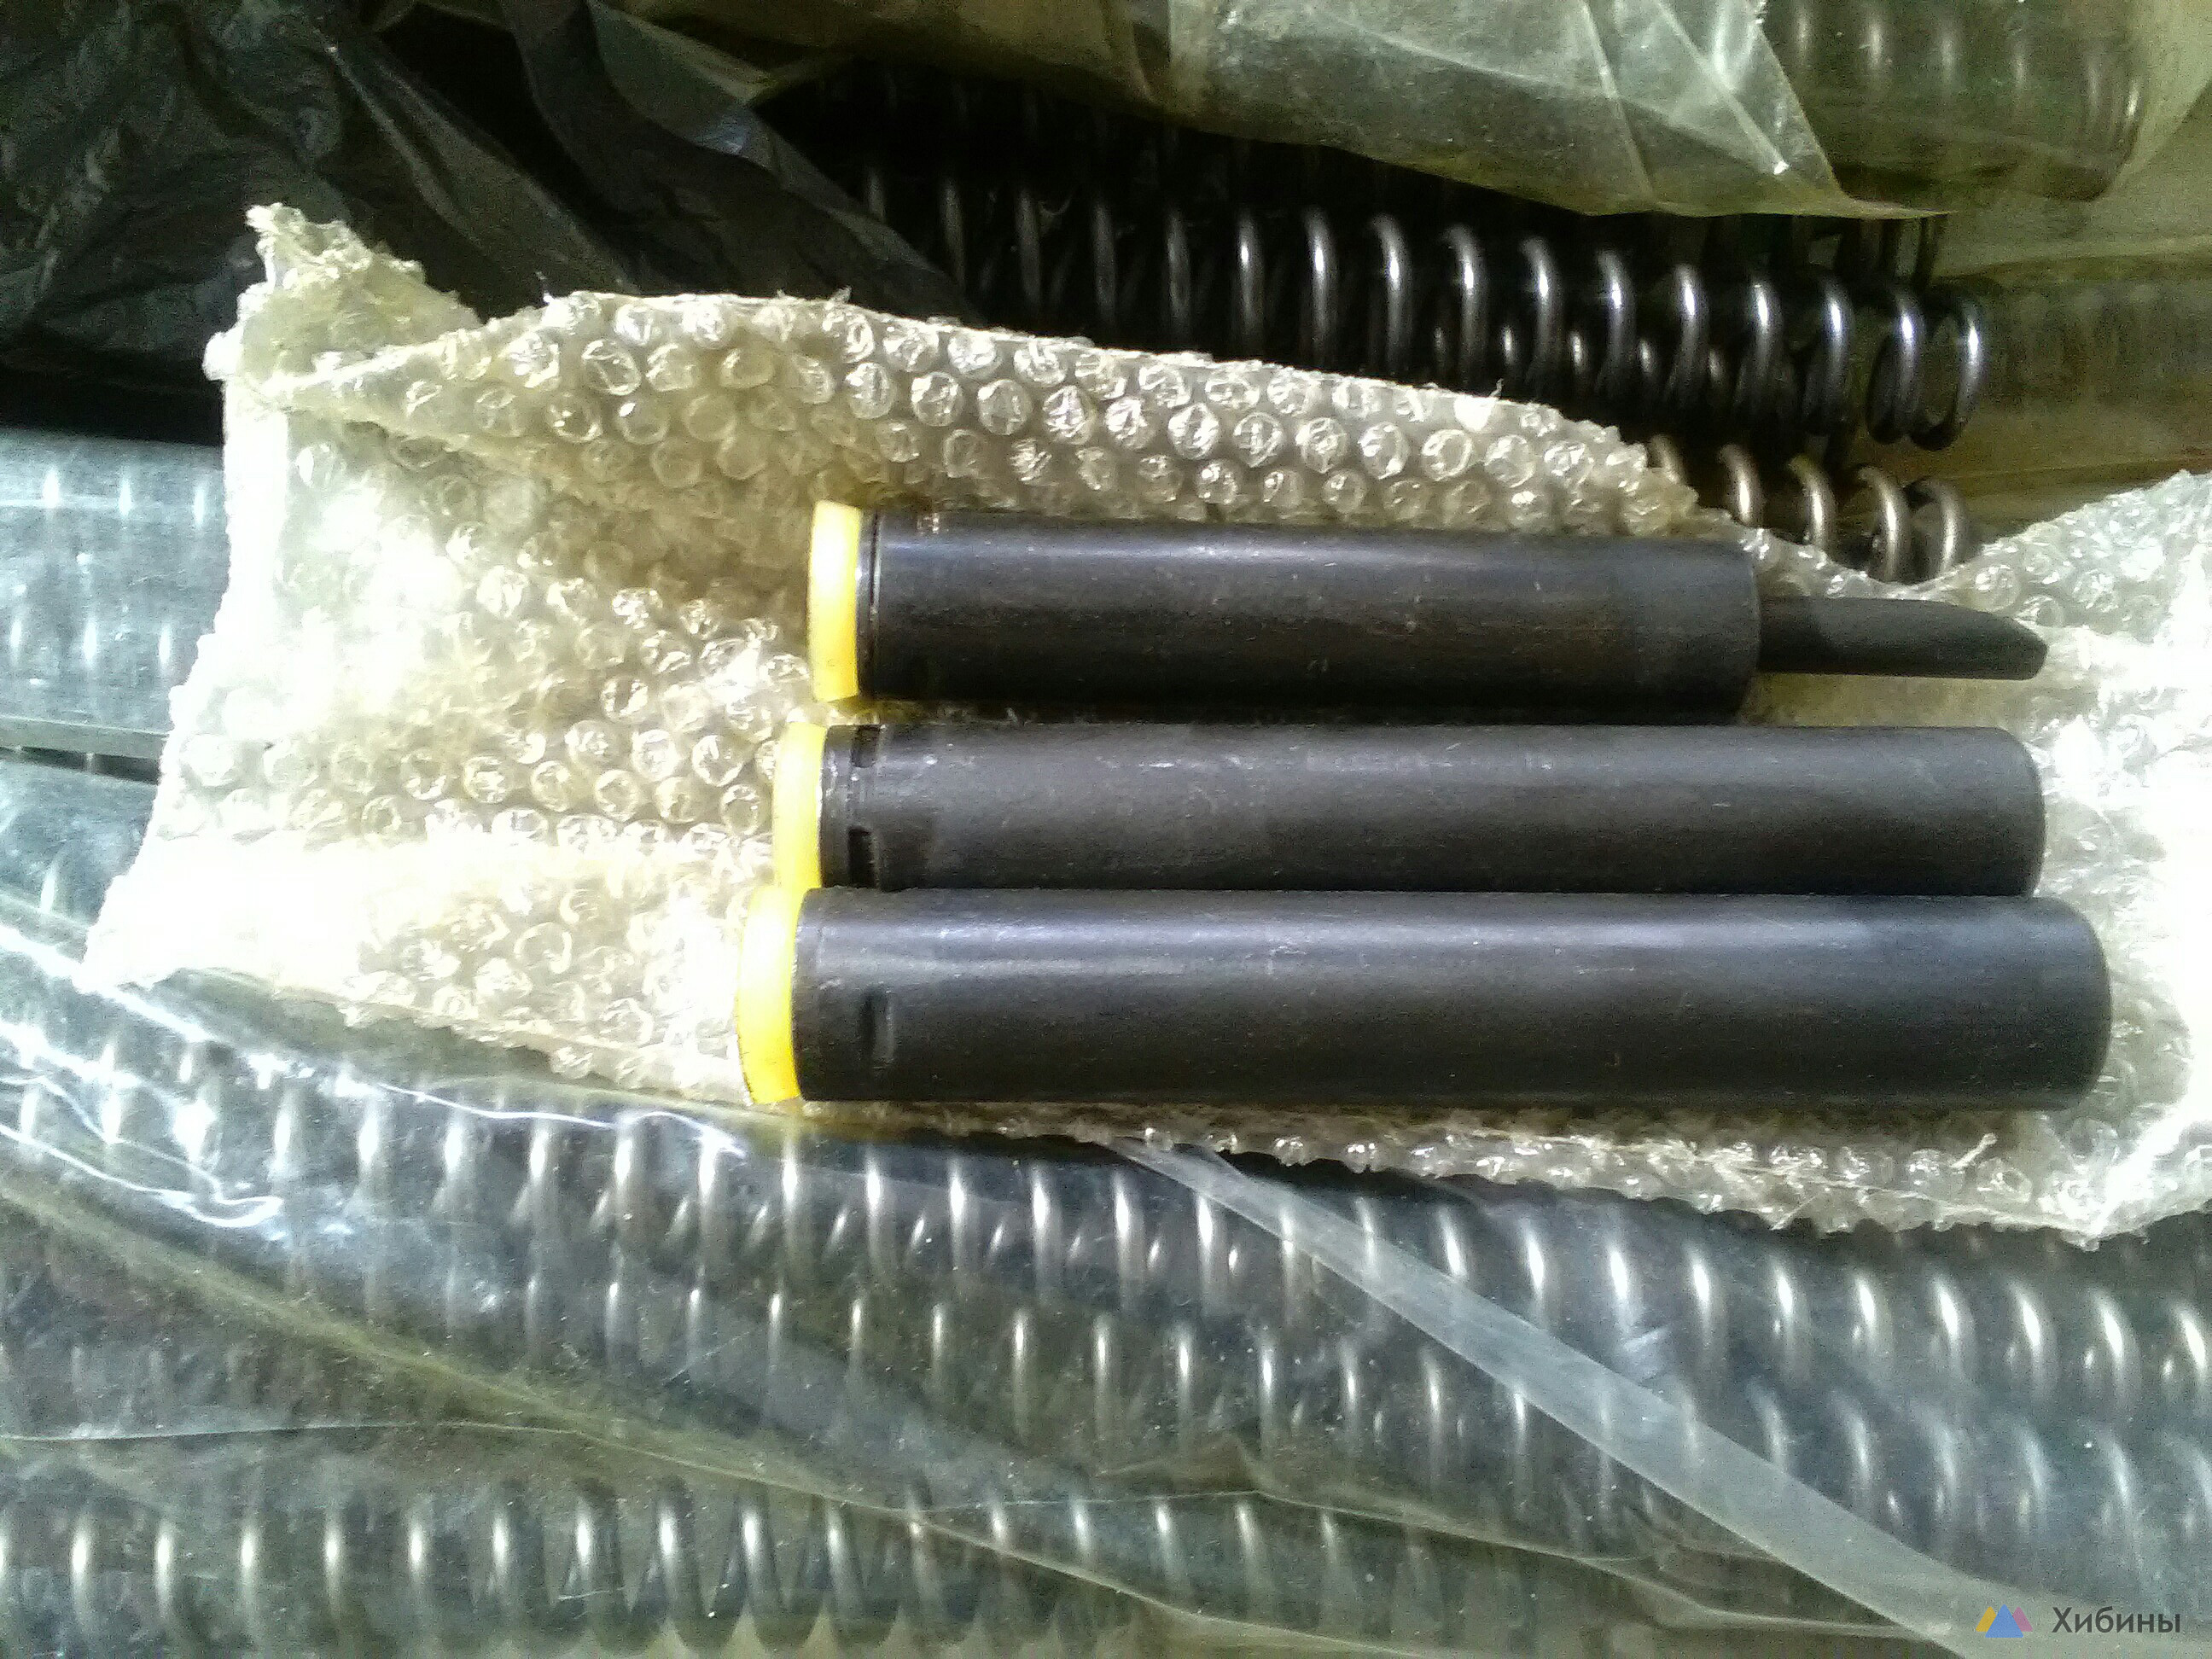 Пружины, манжеты на поршень пневматических винтовок Gamo, Hatsan